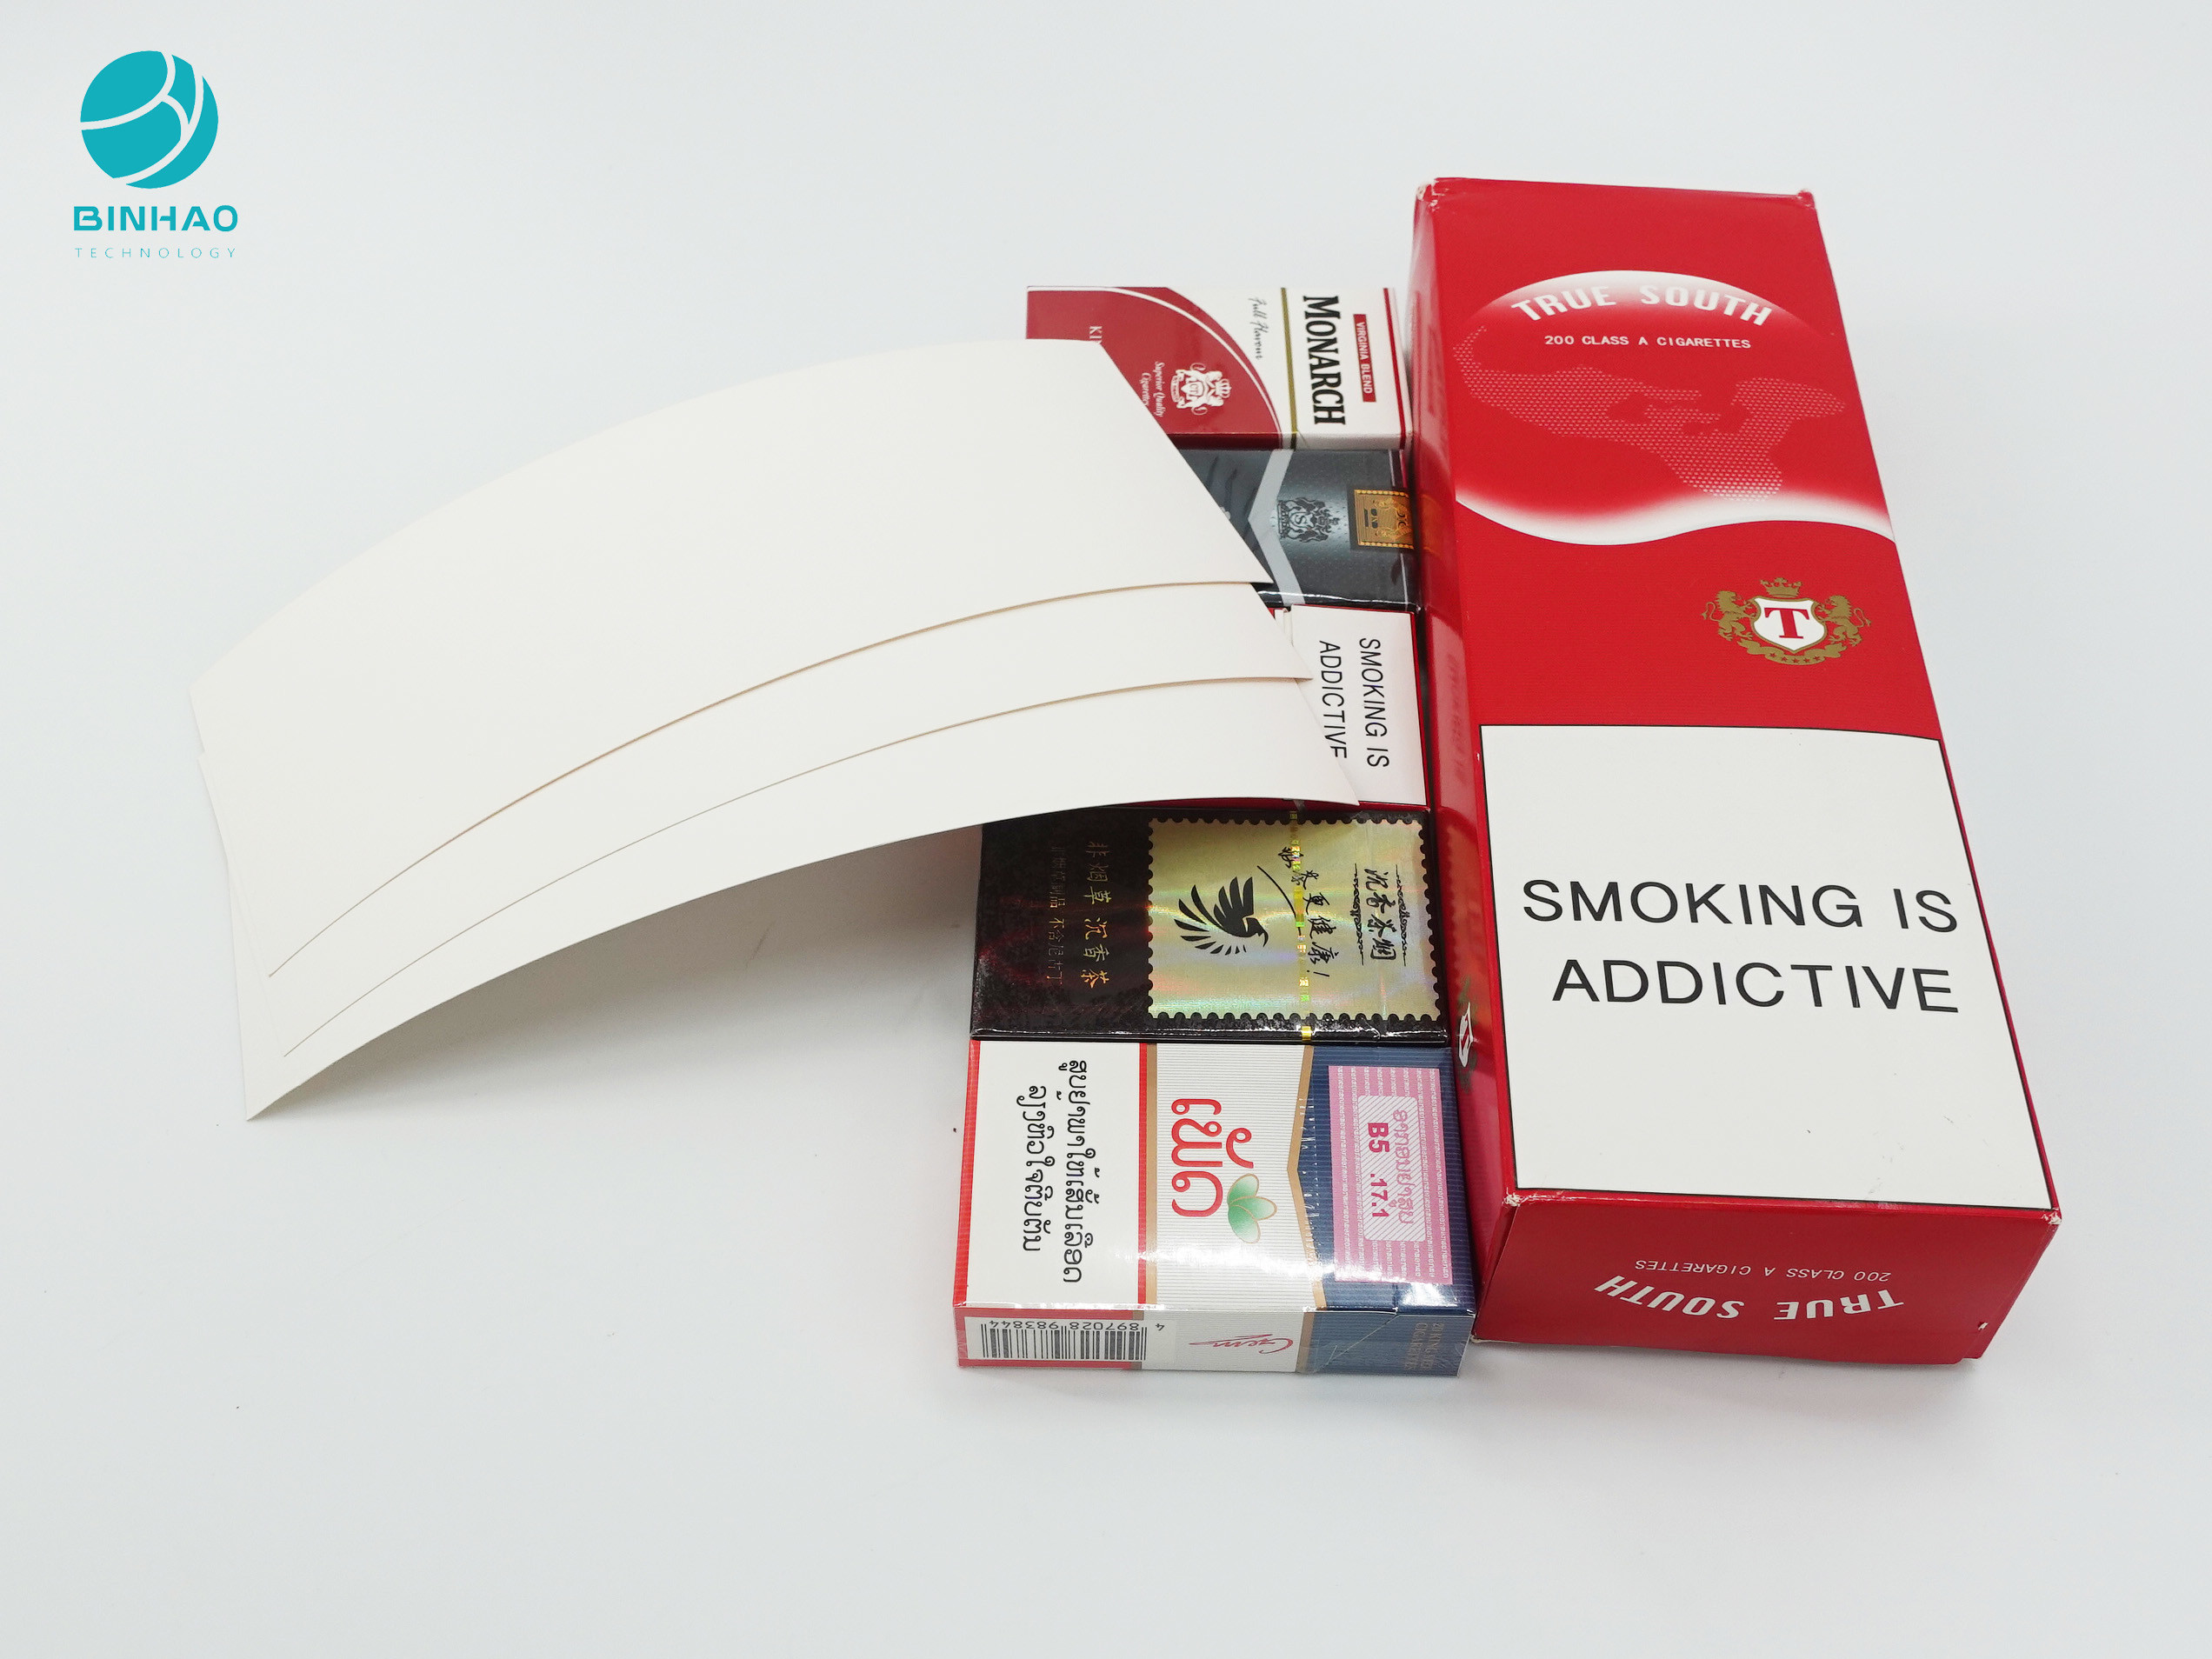 جعبه های یکبار مصرف جعبه کاغذی با دوام سفارشی برای بسته بندی سیگار